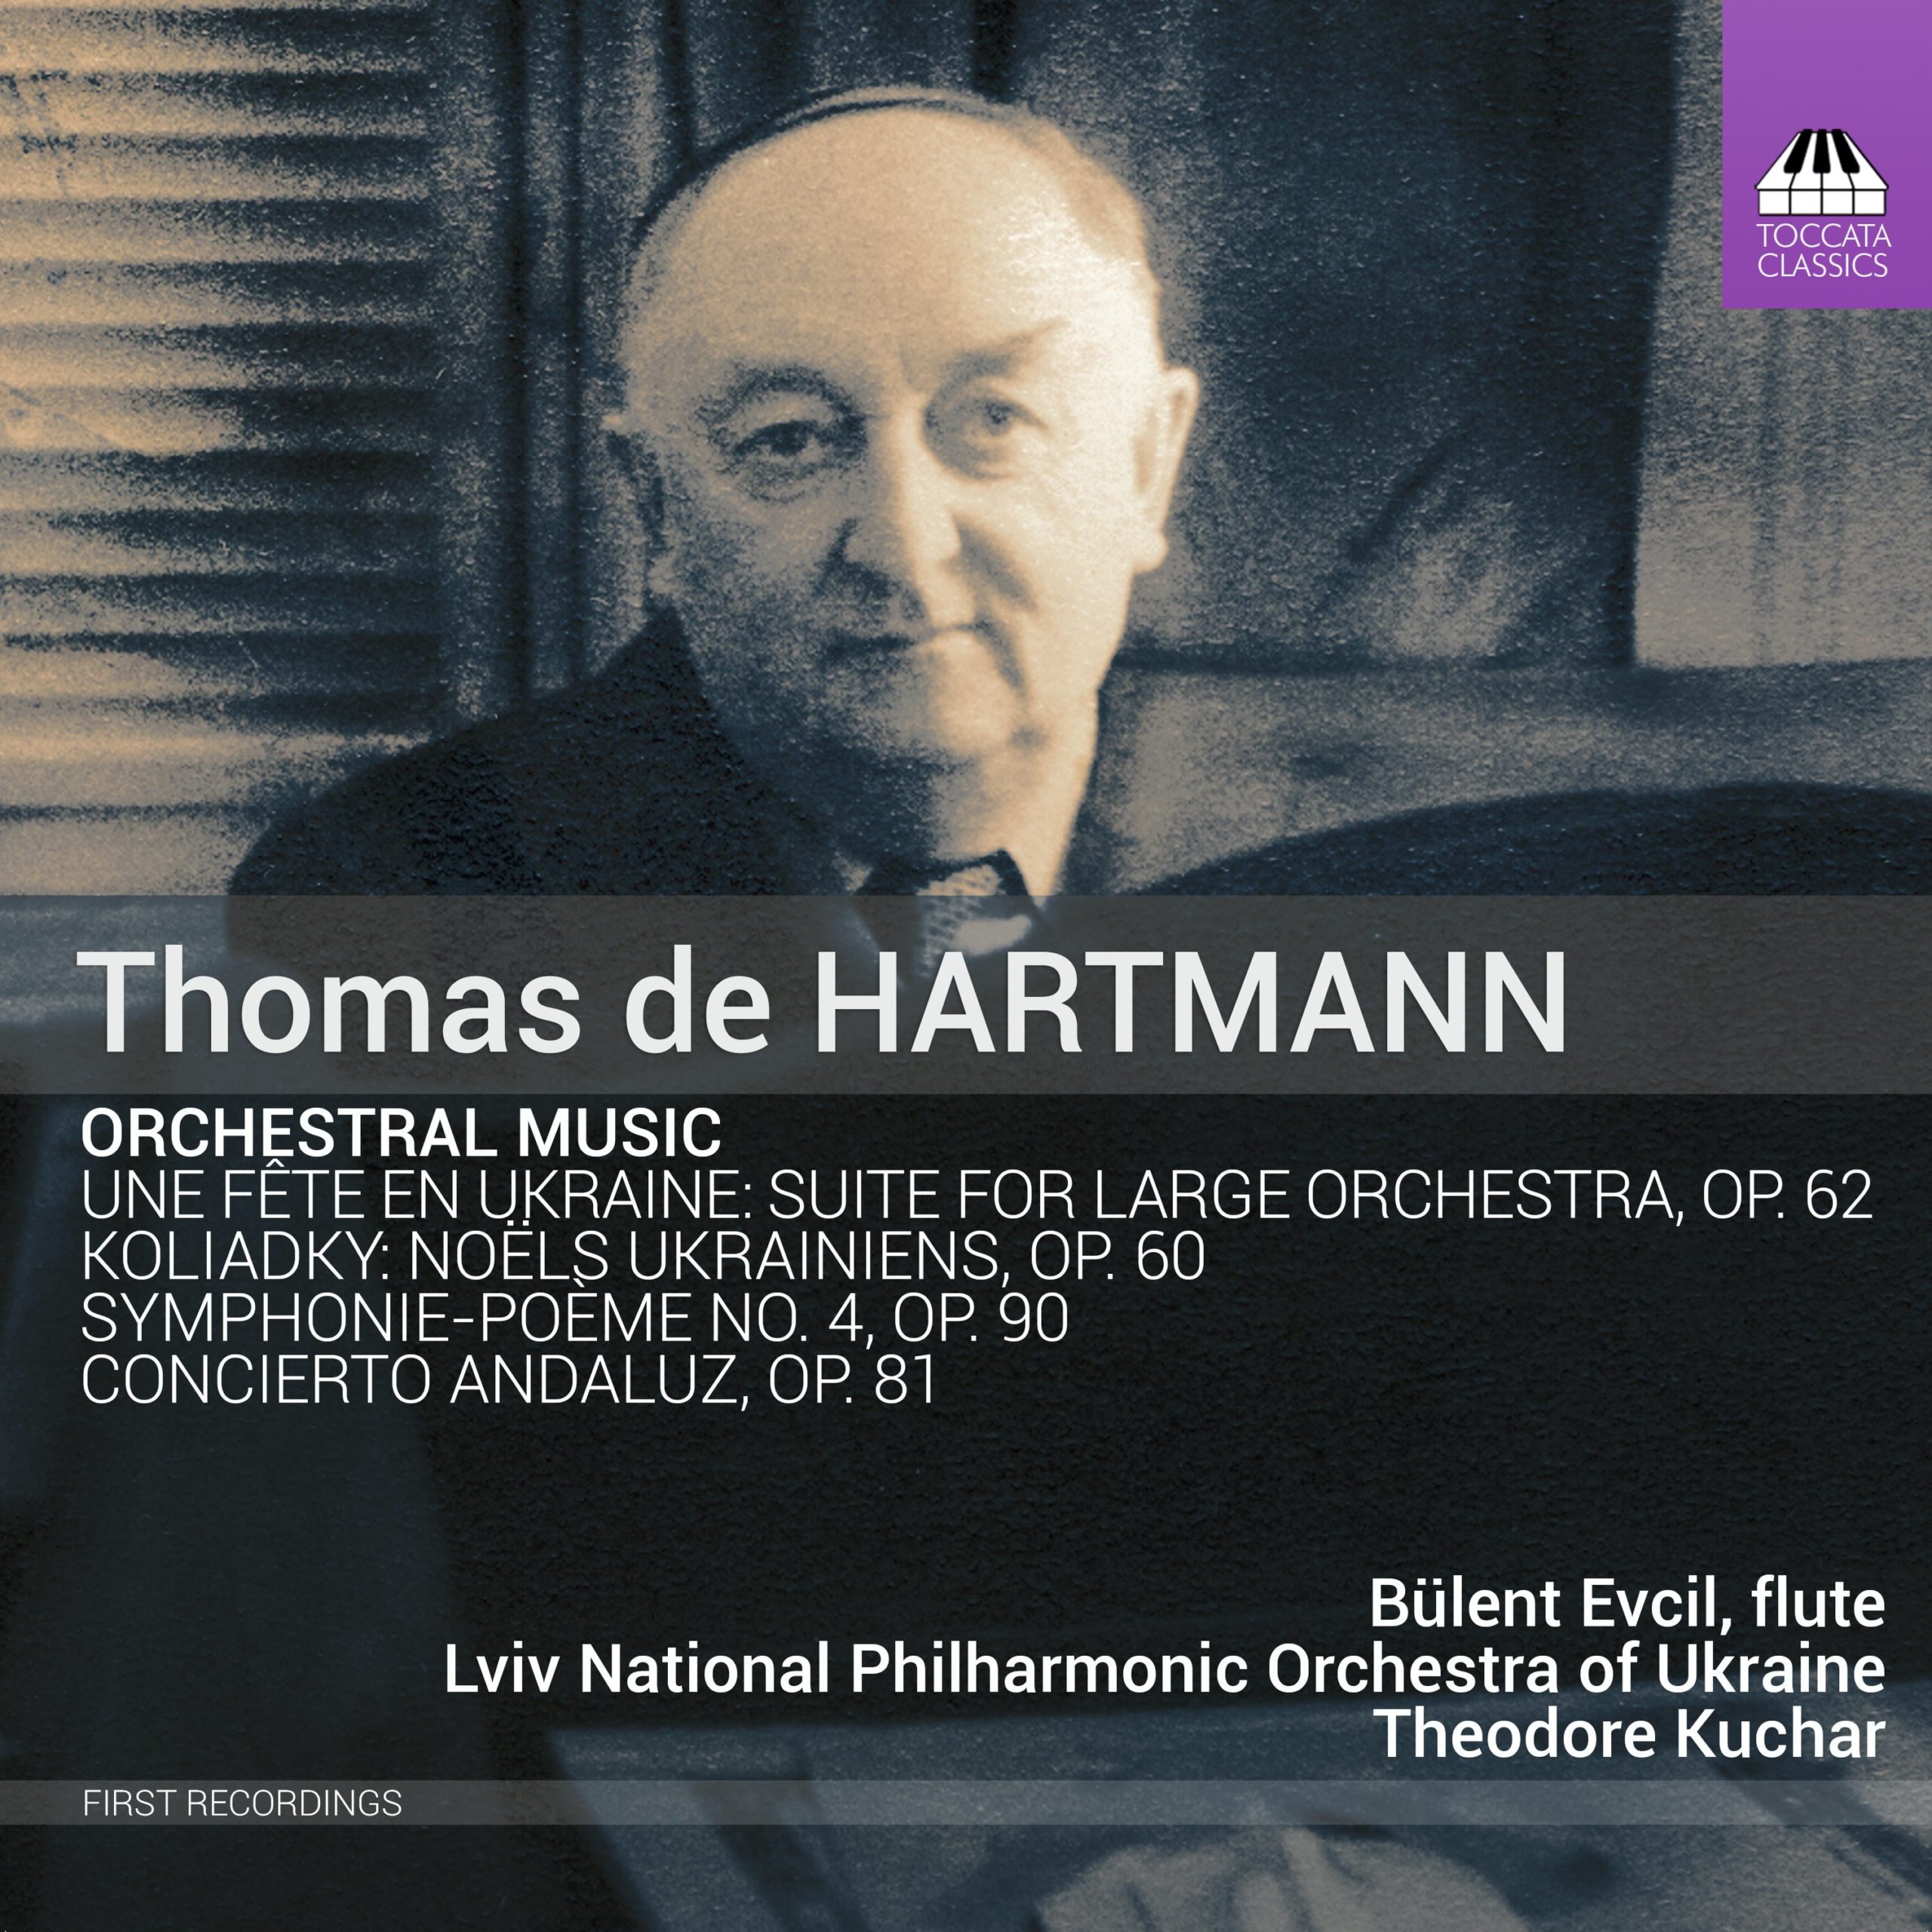 THOMAS DE HARTMANN: ORCHESTRAL MUSIC